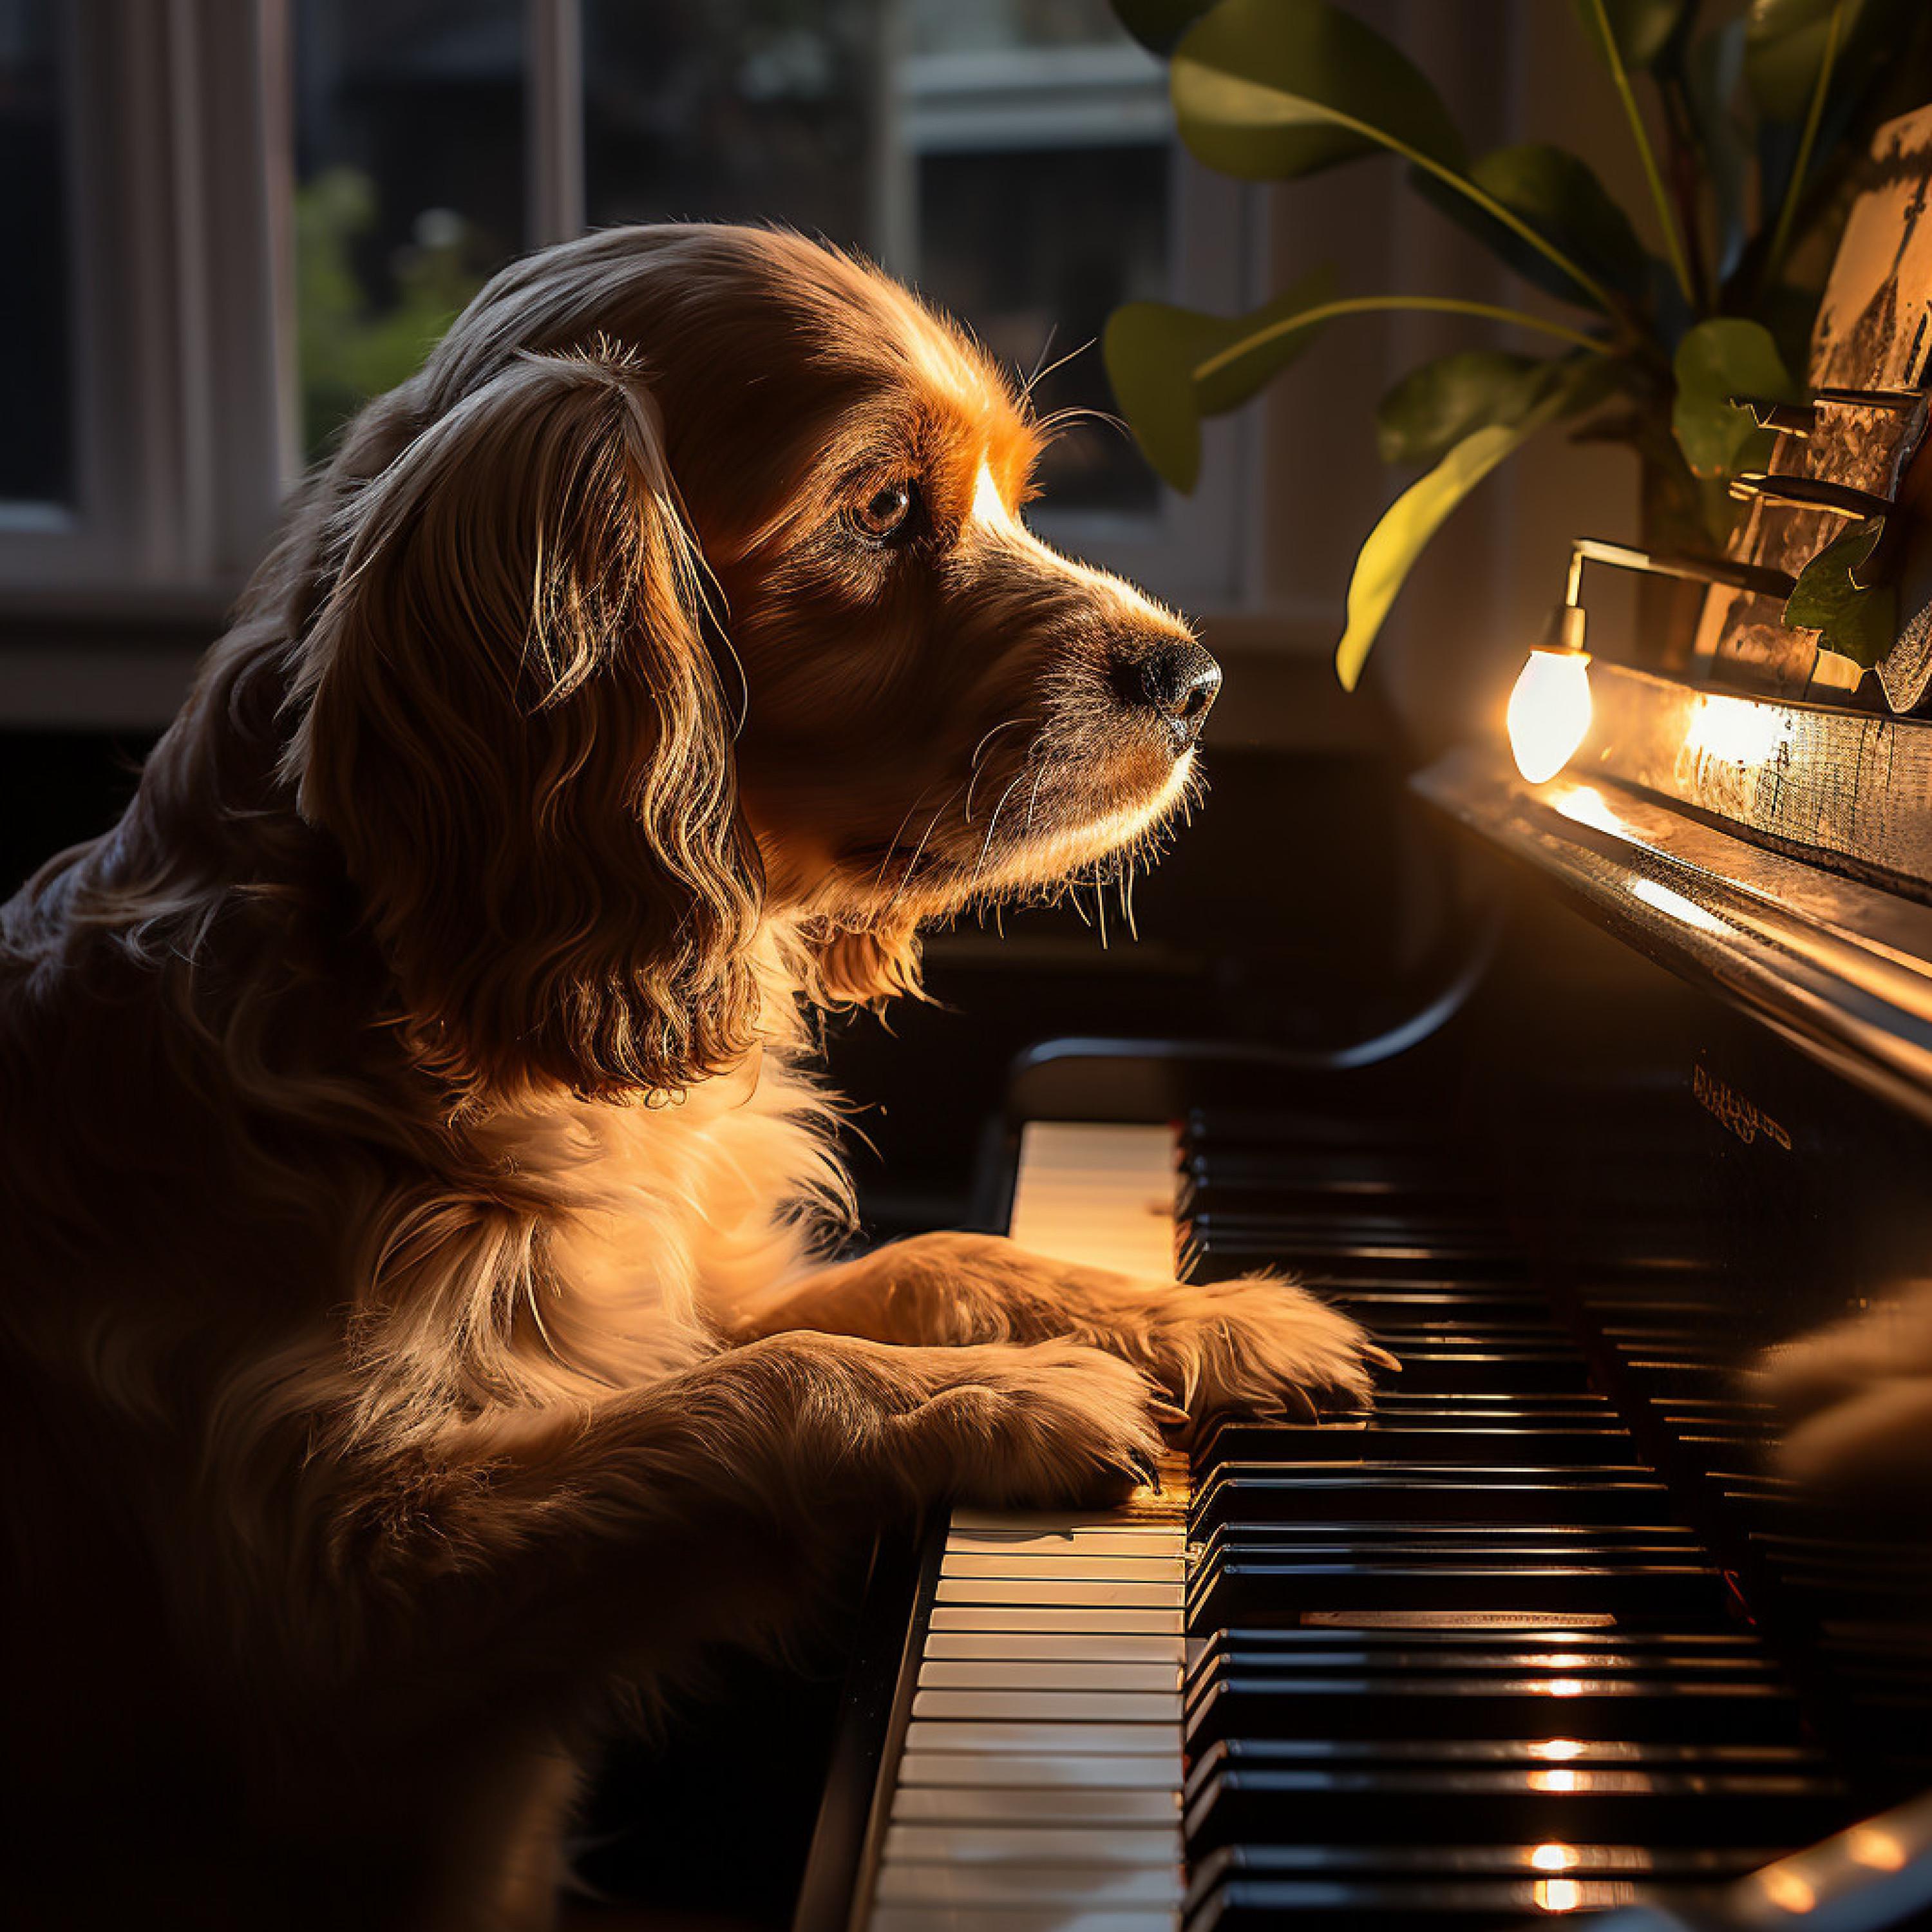 Canal de piano clásico - Aventuras Del Piano: Viajes Encantados Con Perros